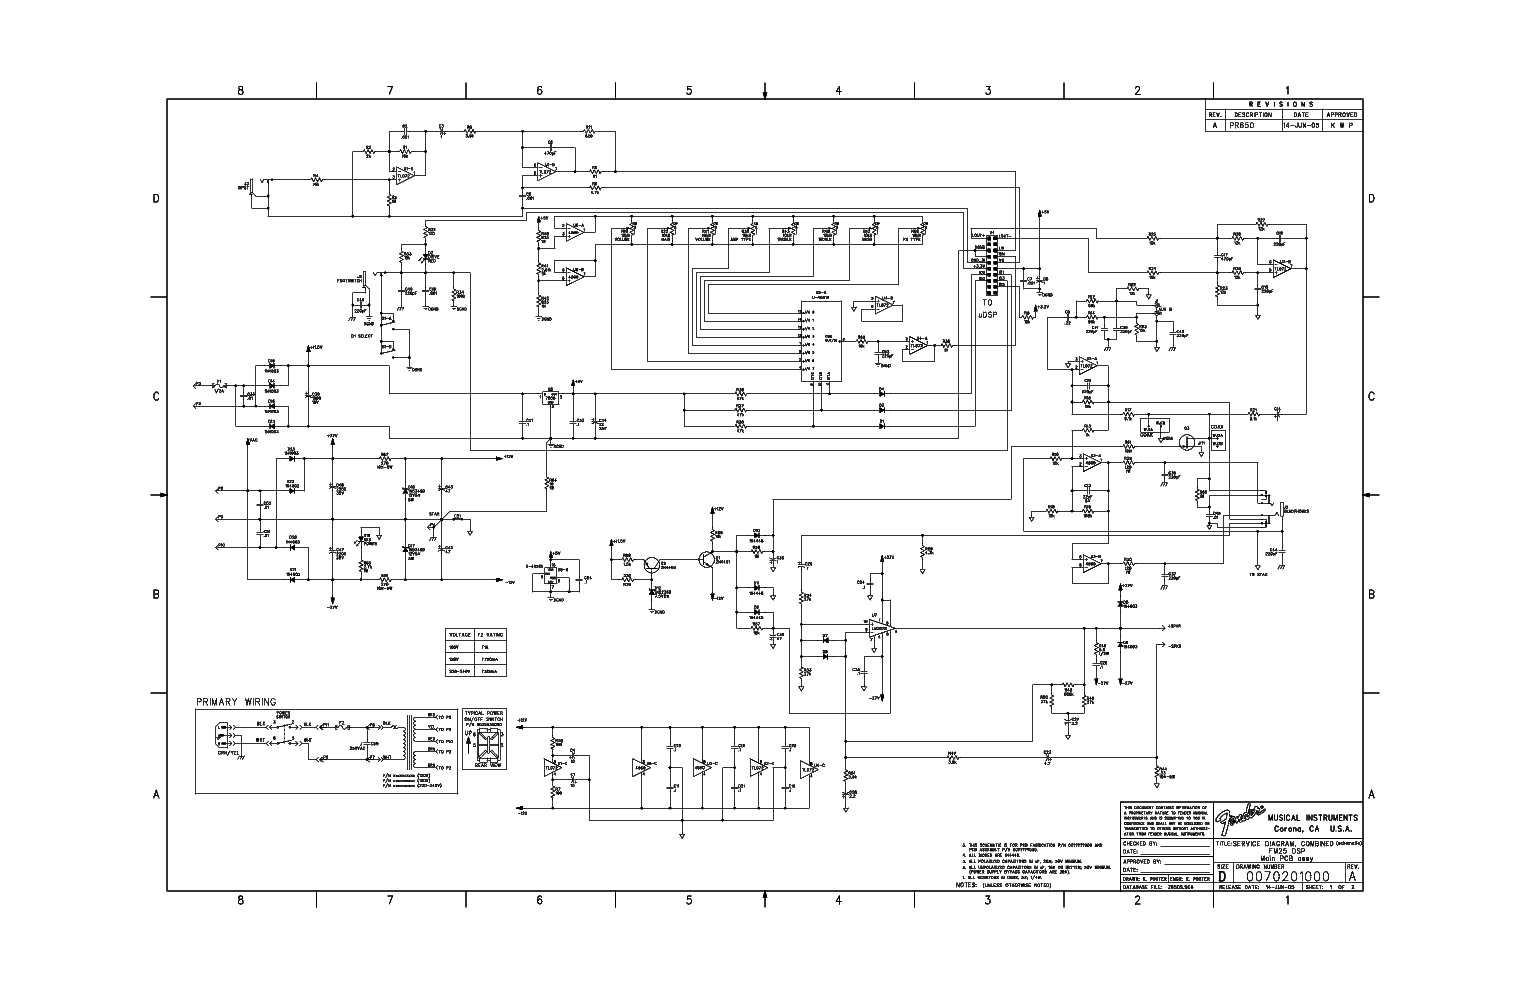 Signal Stat 700 Wiring Diagram from schematron.org